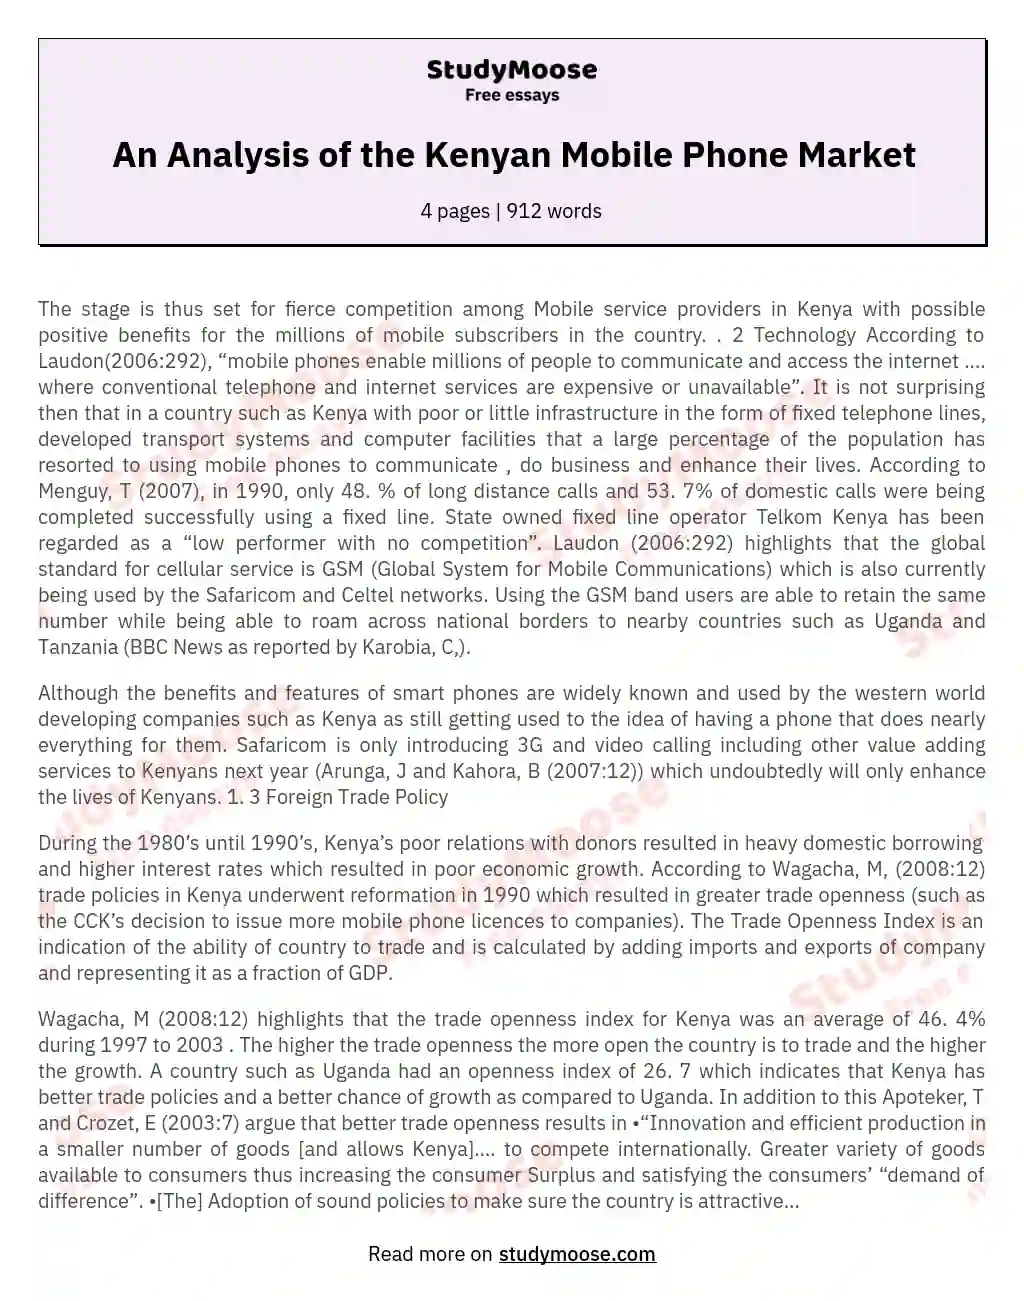 An Analysis of the Kenyan Mobile Phone Market